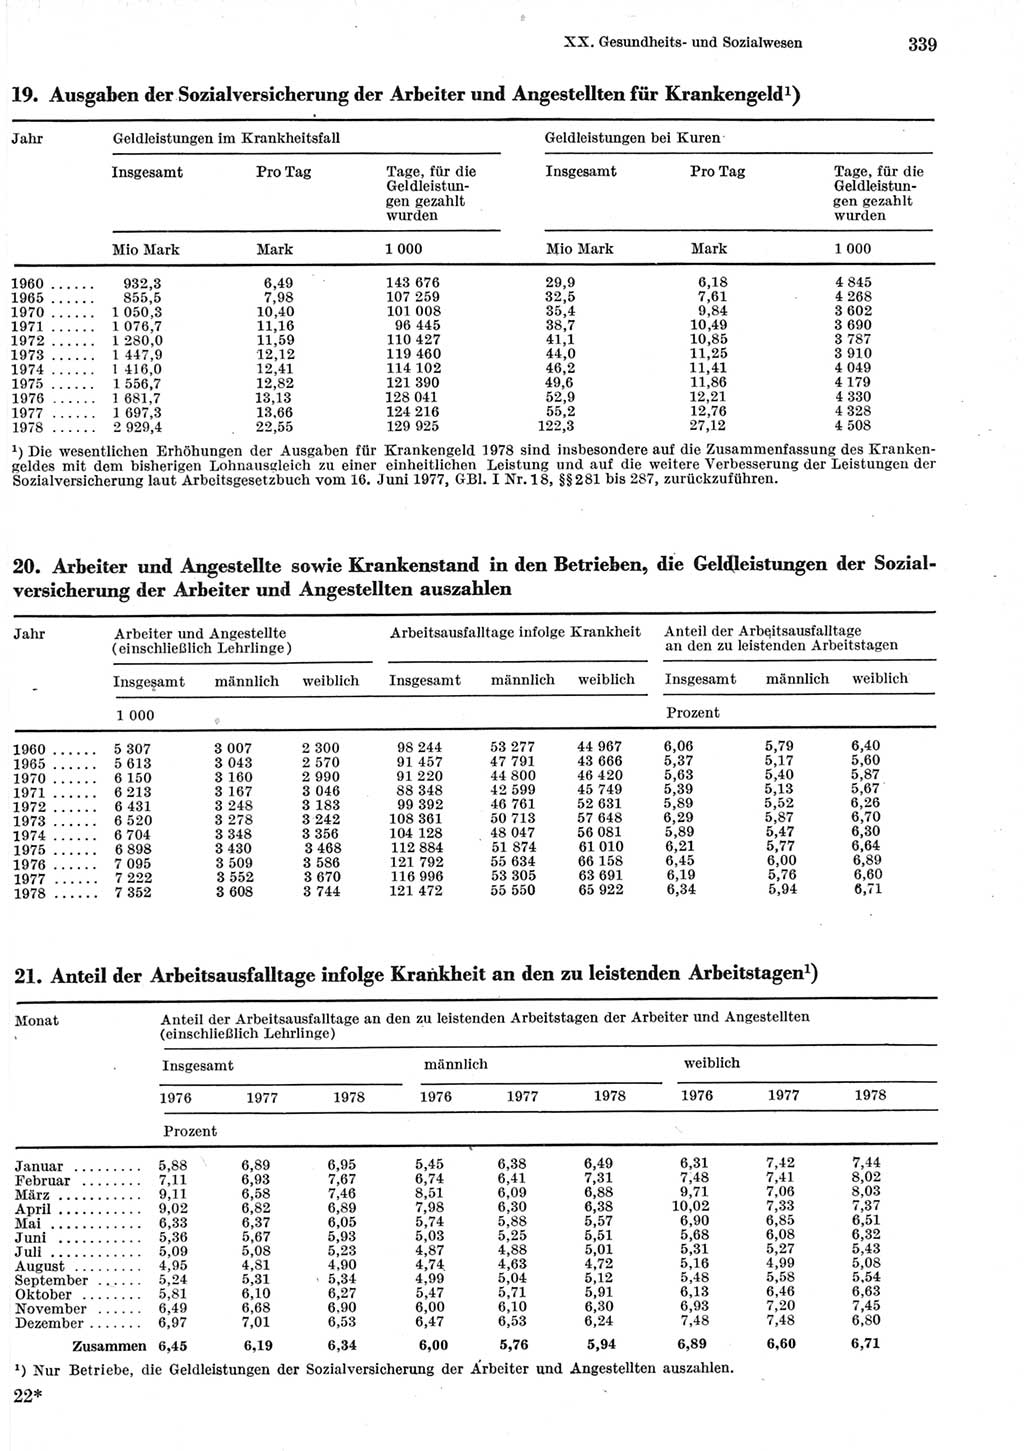 Statistisches Jahrbuch der Deutschen Demokratischen Republik (DDR) 1979, Seite 339 (Stat. Jb. DDR 1979, S. 339)